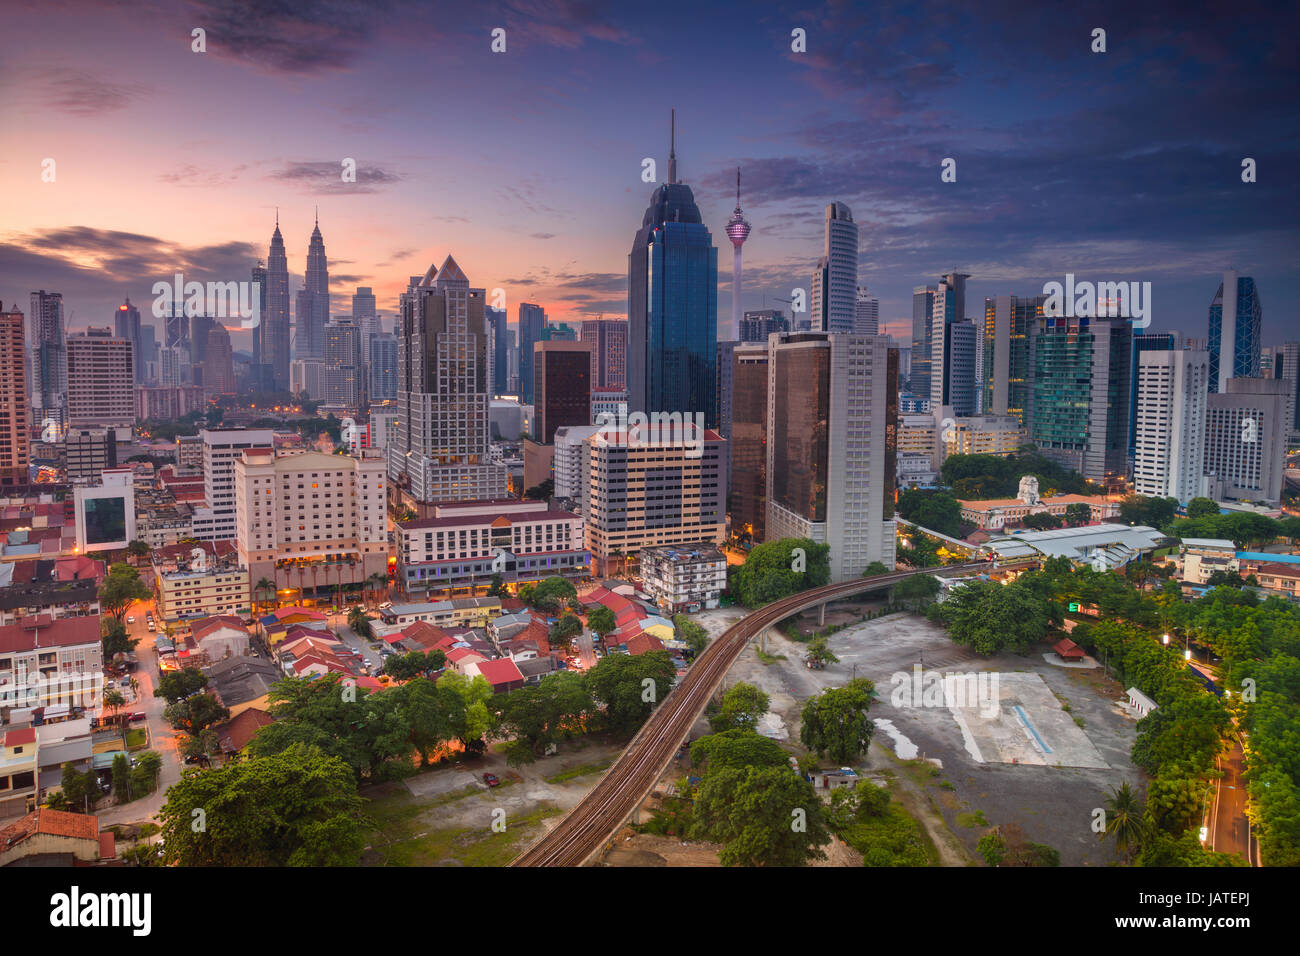 Kuala Lumpur. Cityscape image of Kuala Lumpur, Malaysia during sunrise. Stock Photo